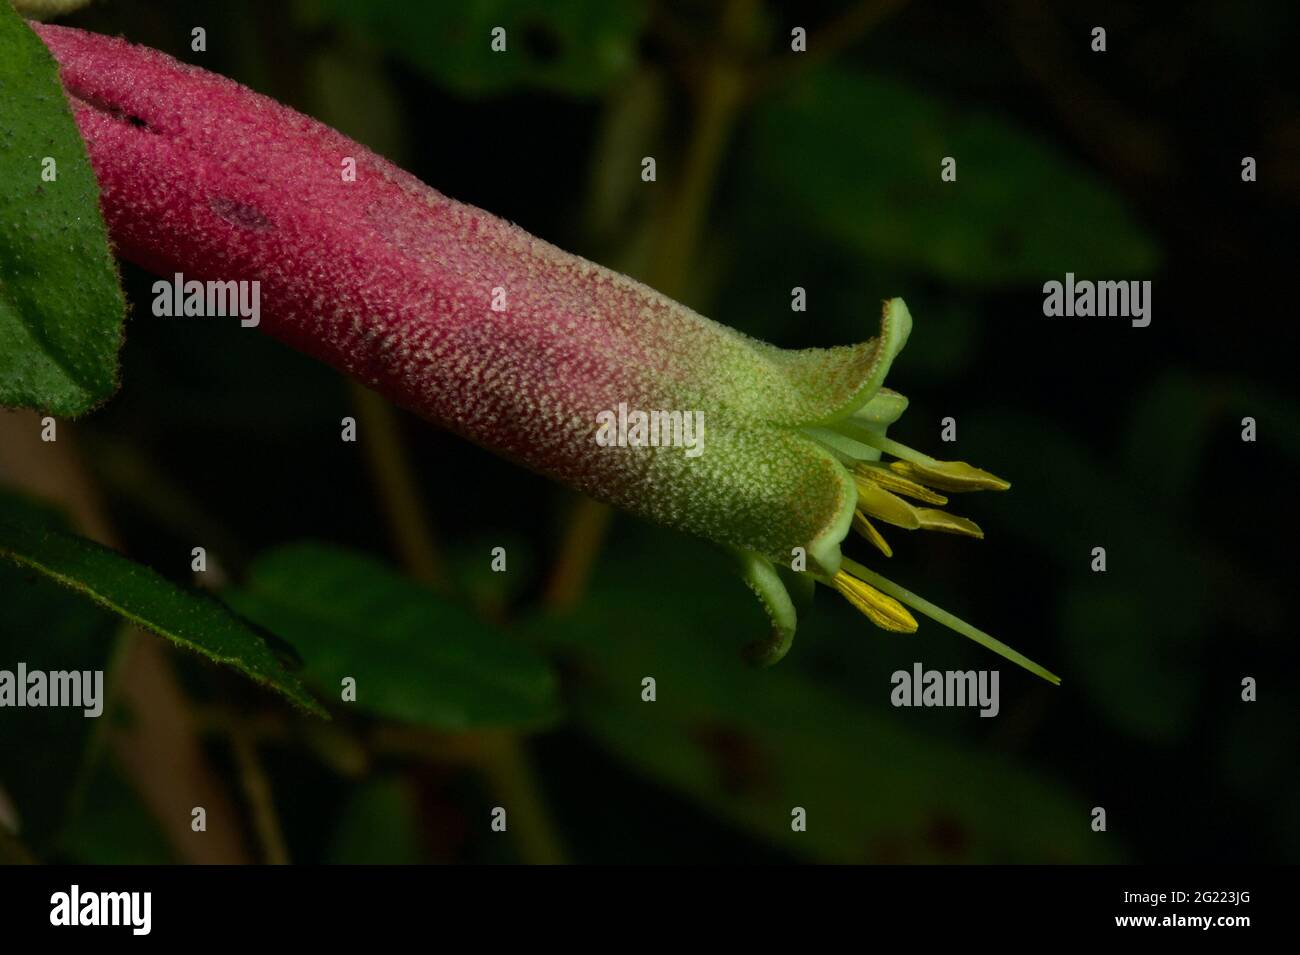 Die einheimische Fuschia (Correa Reflexa) hat einige Büsche mit grünen und einige mit roten Blüten. Alle Blüten haben eine grüne Spitze, wie diese hier. Stockfoto